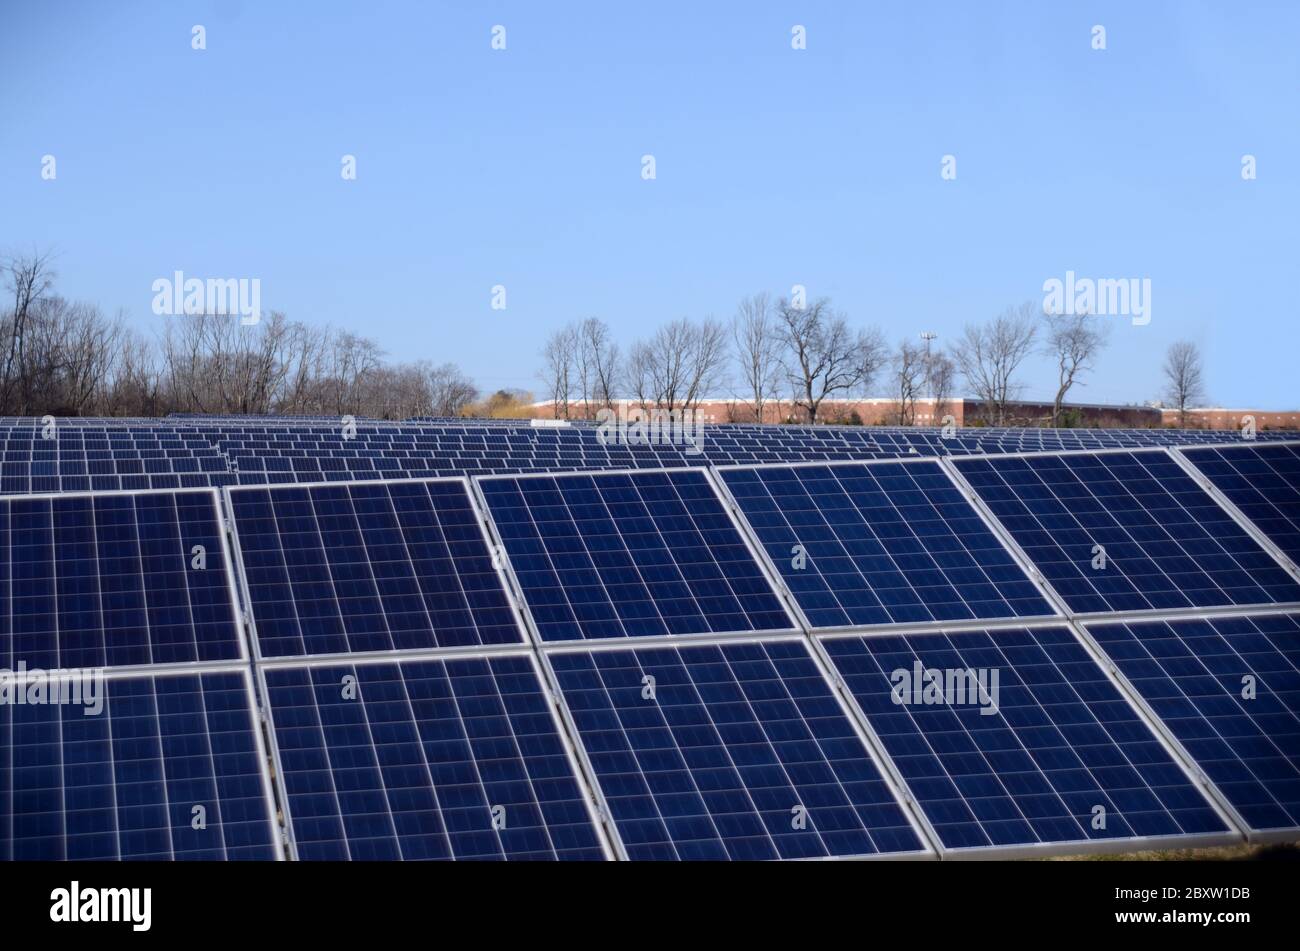 DIFESA: Le fattorie solari fiancano i paesaggi aperti nella zona di Tinton Falls del New Jersey. Foto Stock